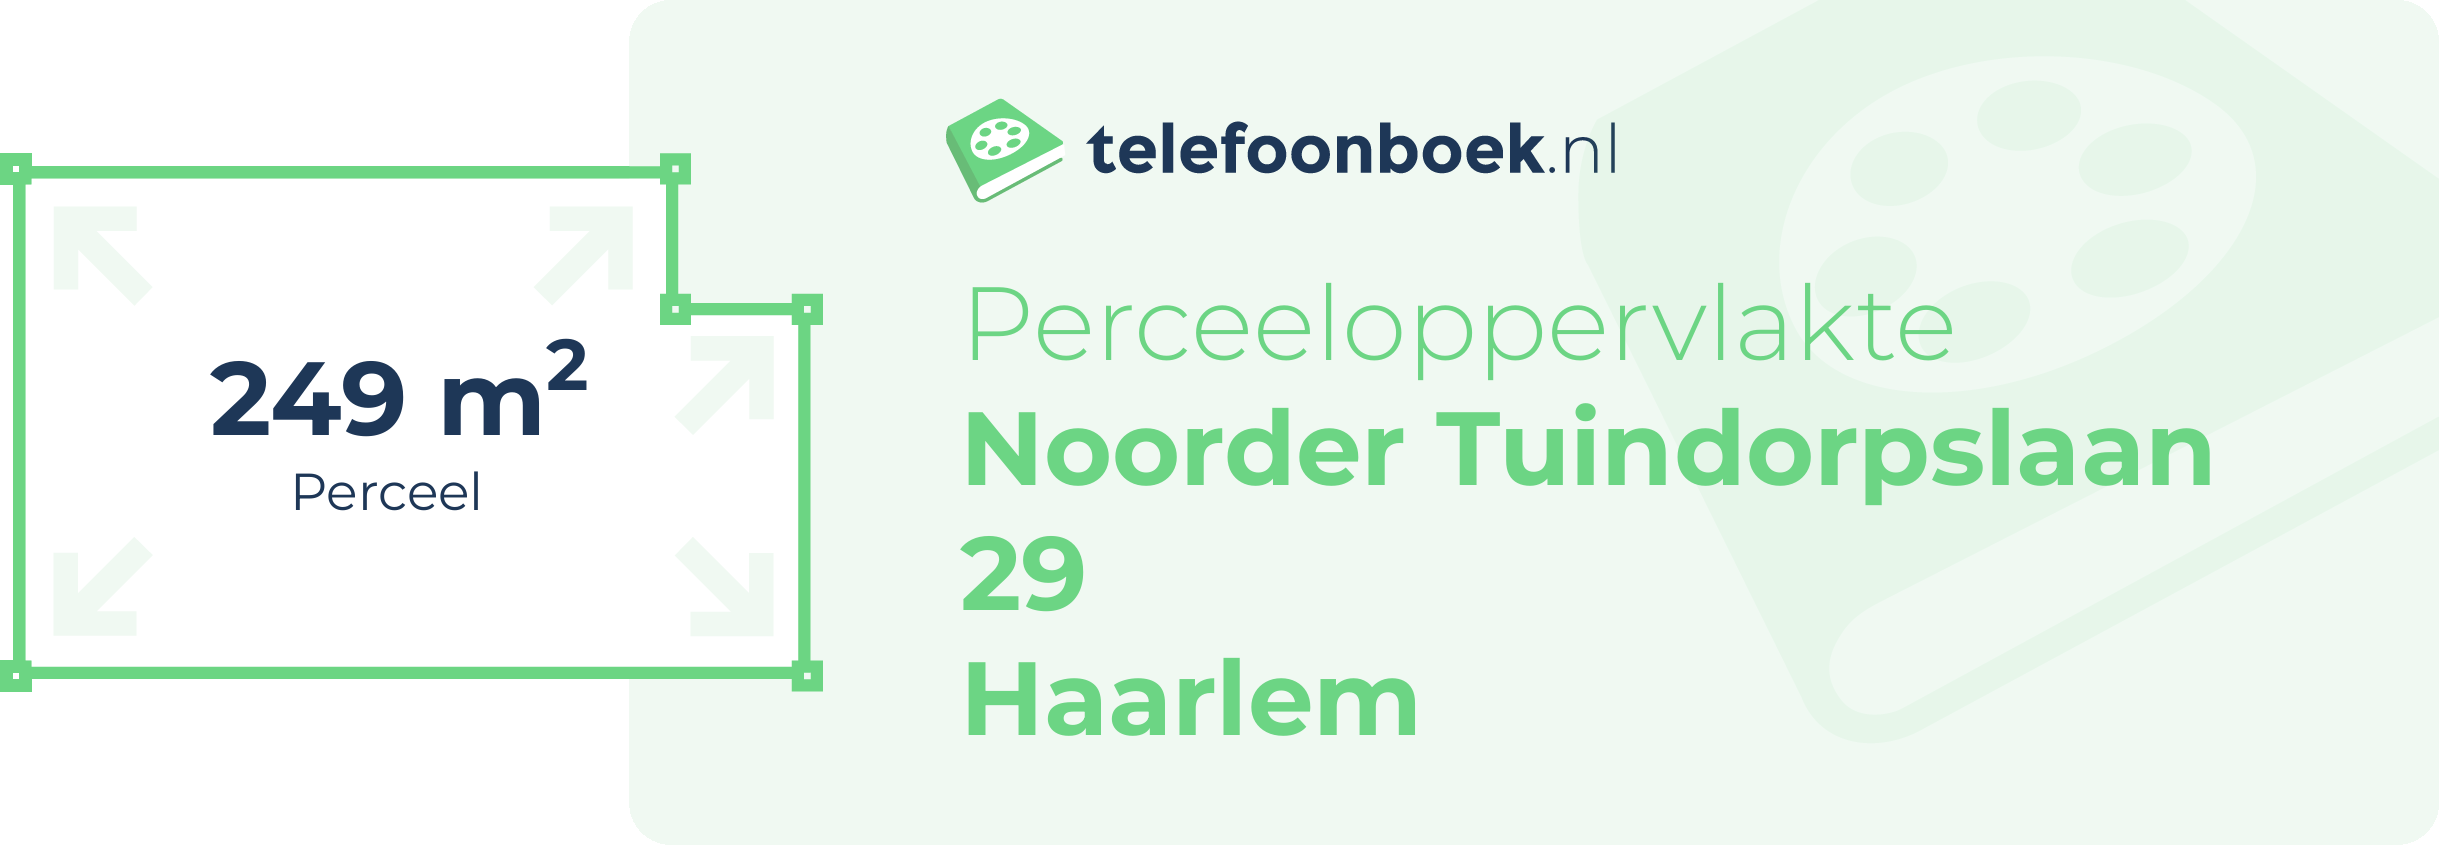 Perceeloppervlakte Noorder Tuindorpslaan 29 Haarlem